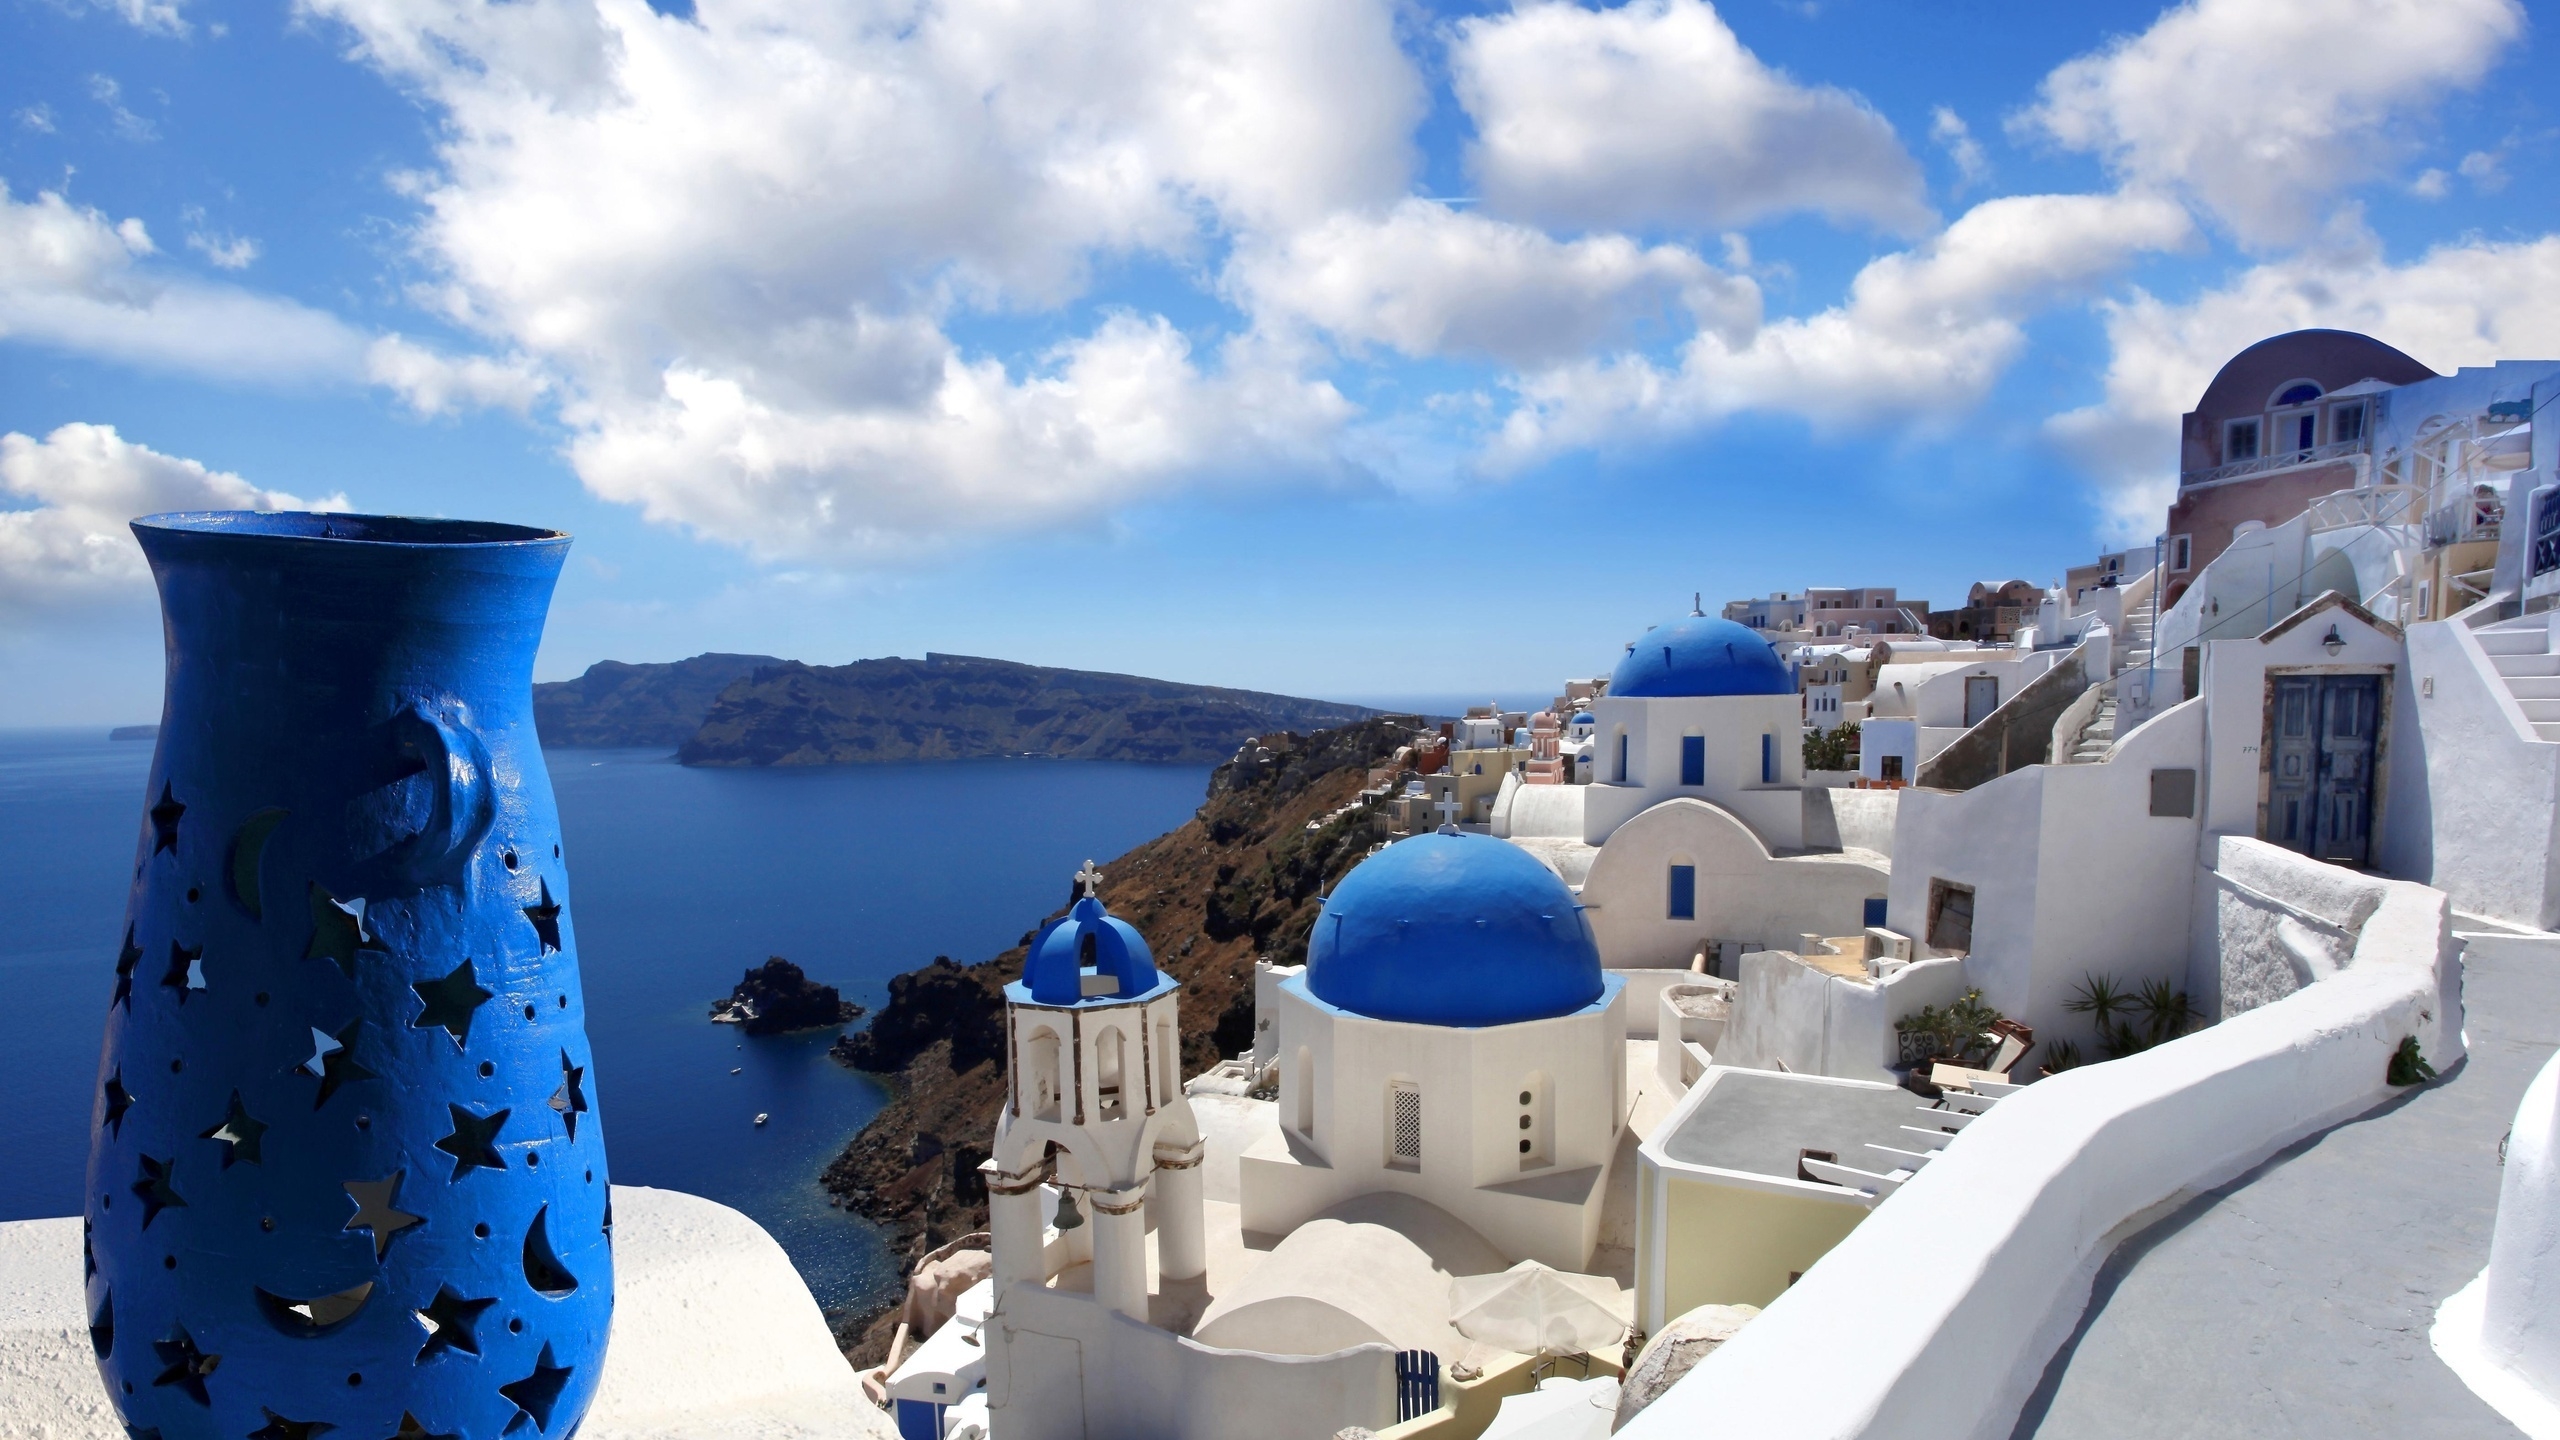 Blue Santorini Greece for 2560x1440 HDTV resolution